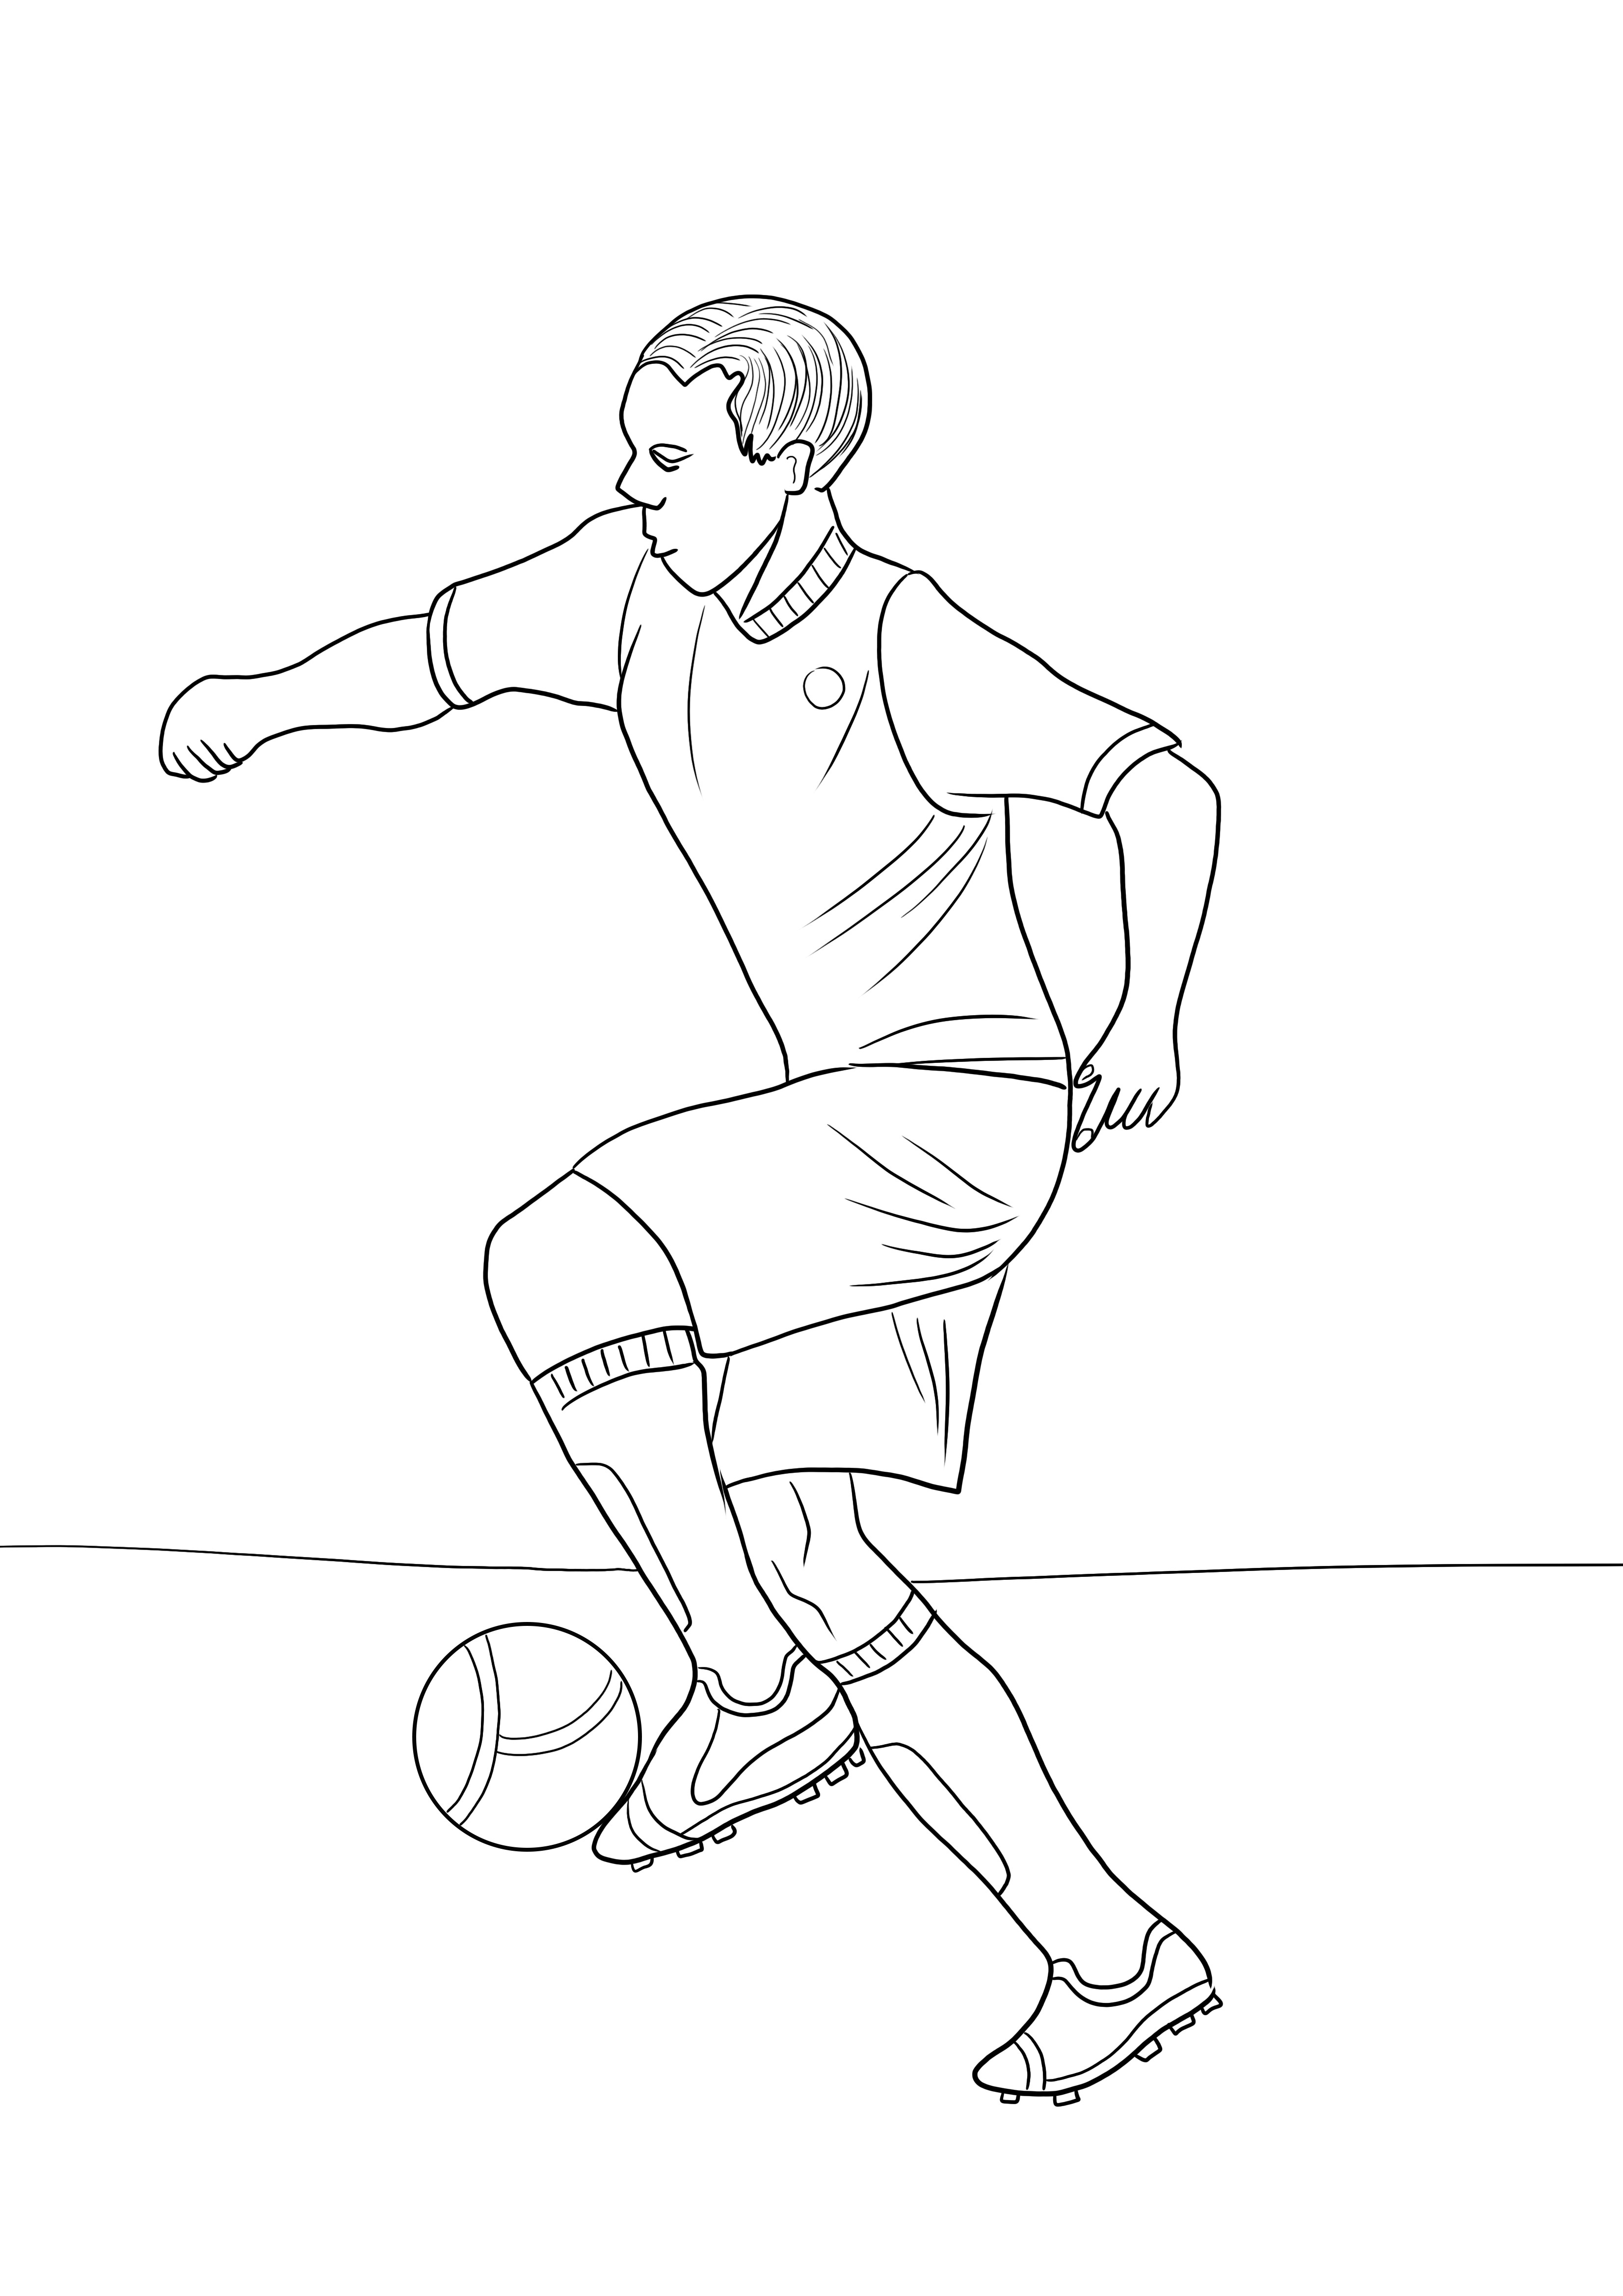 Descarga gratuita e imagen en color de un jugador de fútbol para una fácil comprensión del tema deportivo.